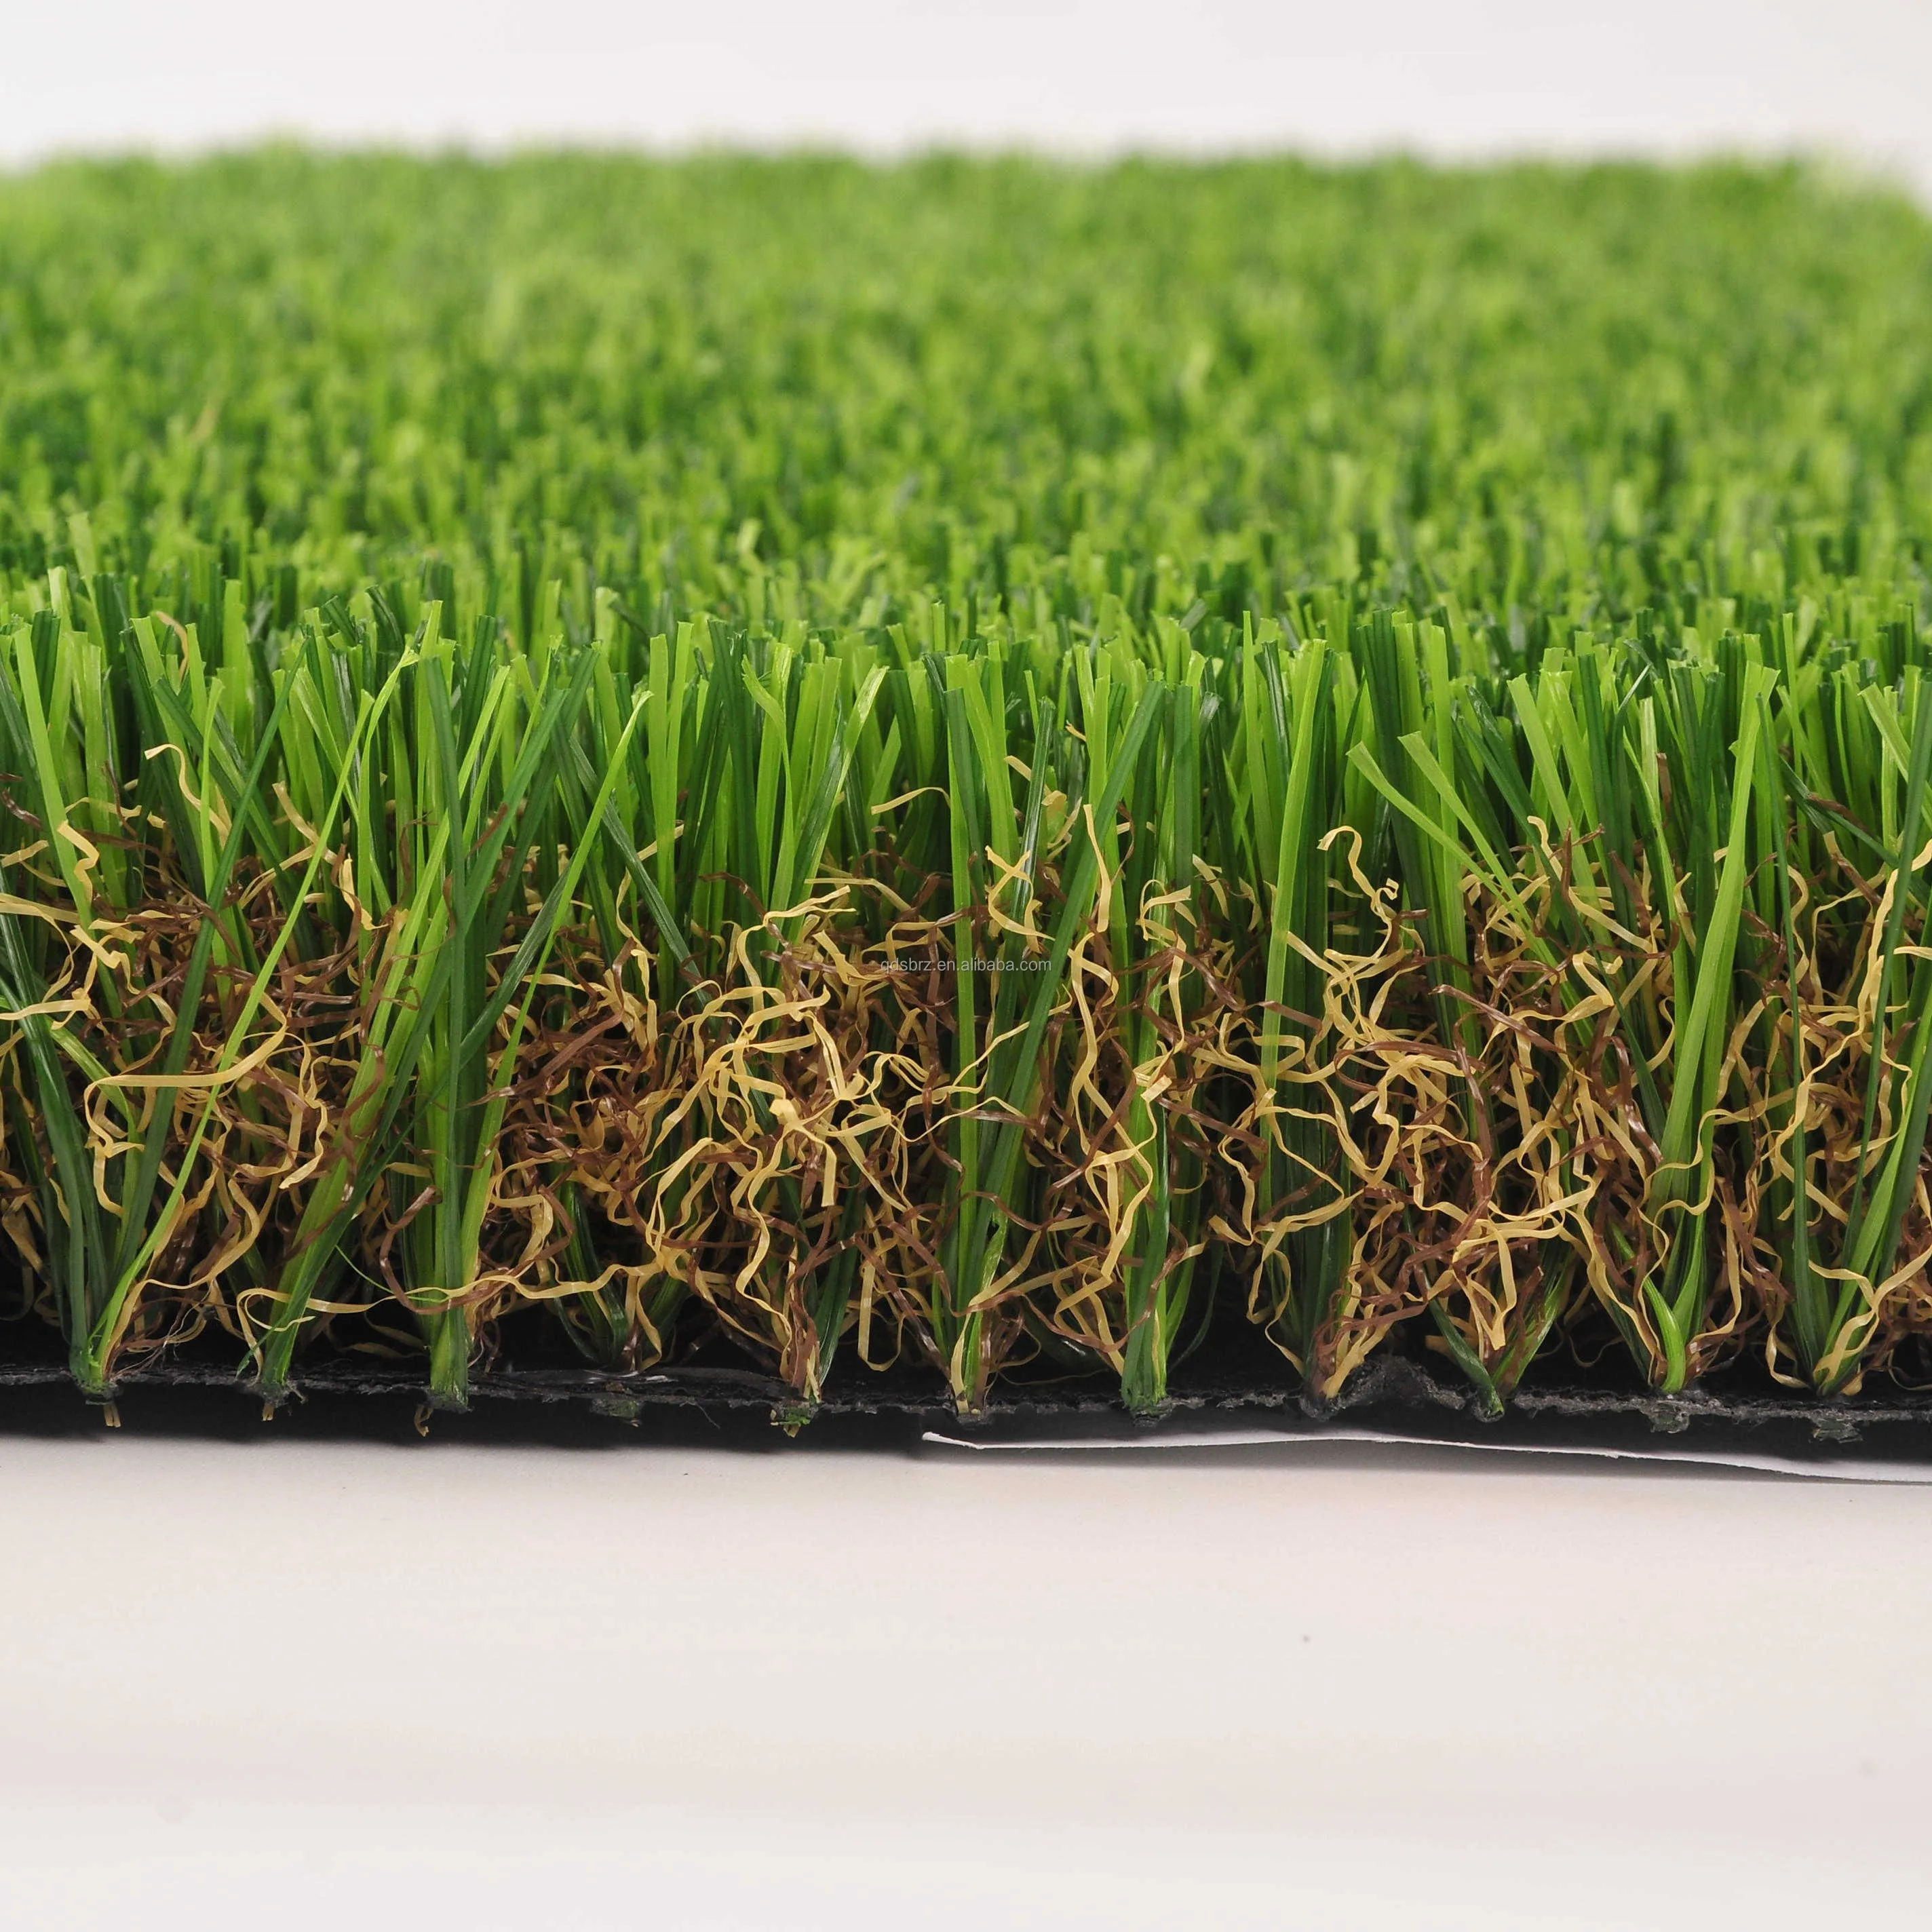 Gli animali domestici ecologici professionali all'ingrosso dell'erba di Sunberg usano il tappeto erboso sintetico dell'erba artificiale per i bambini